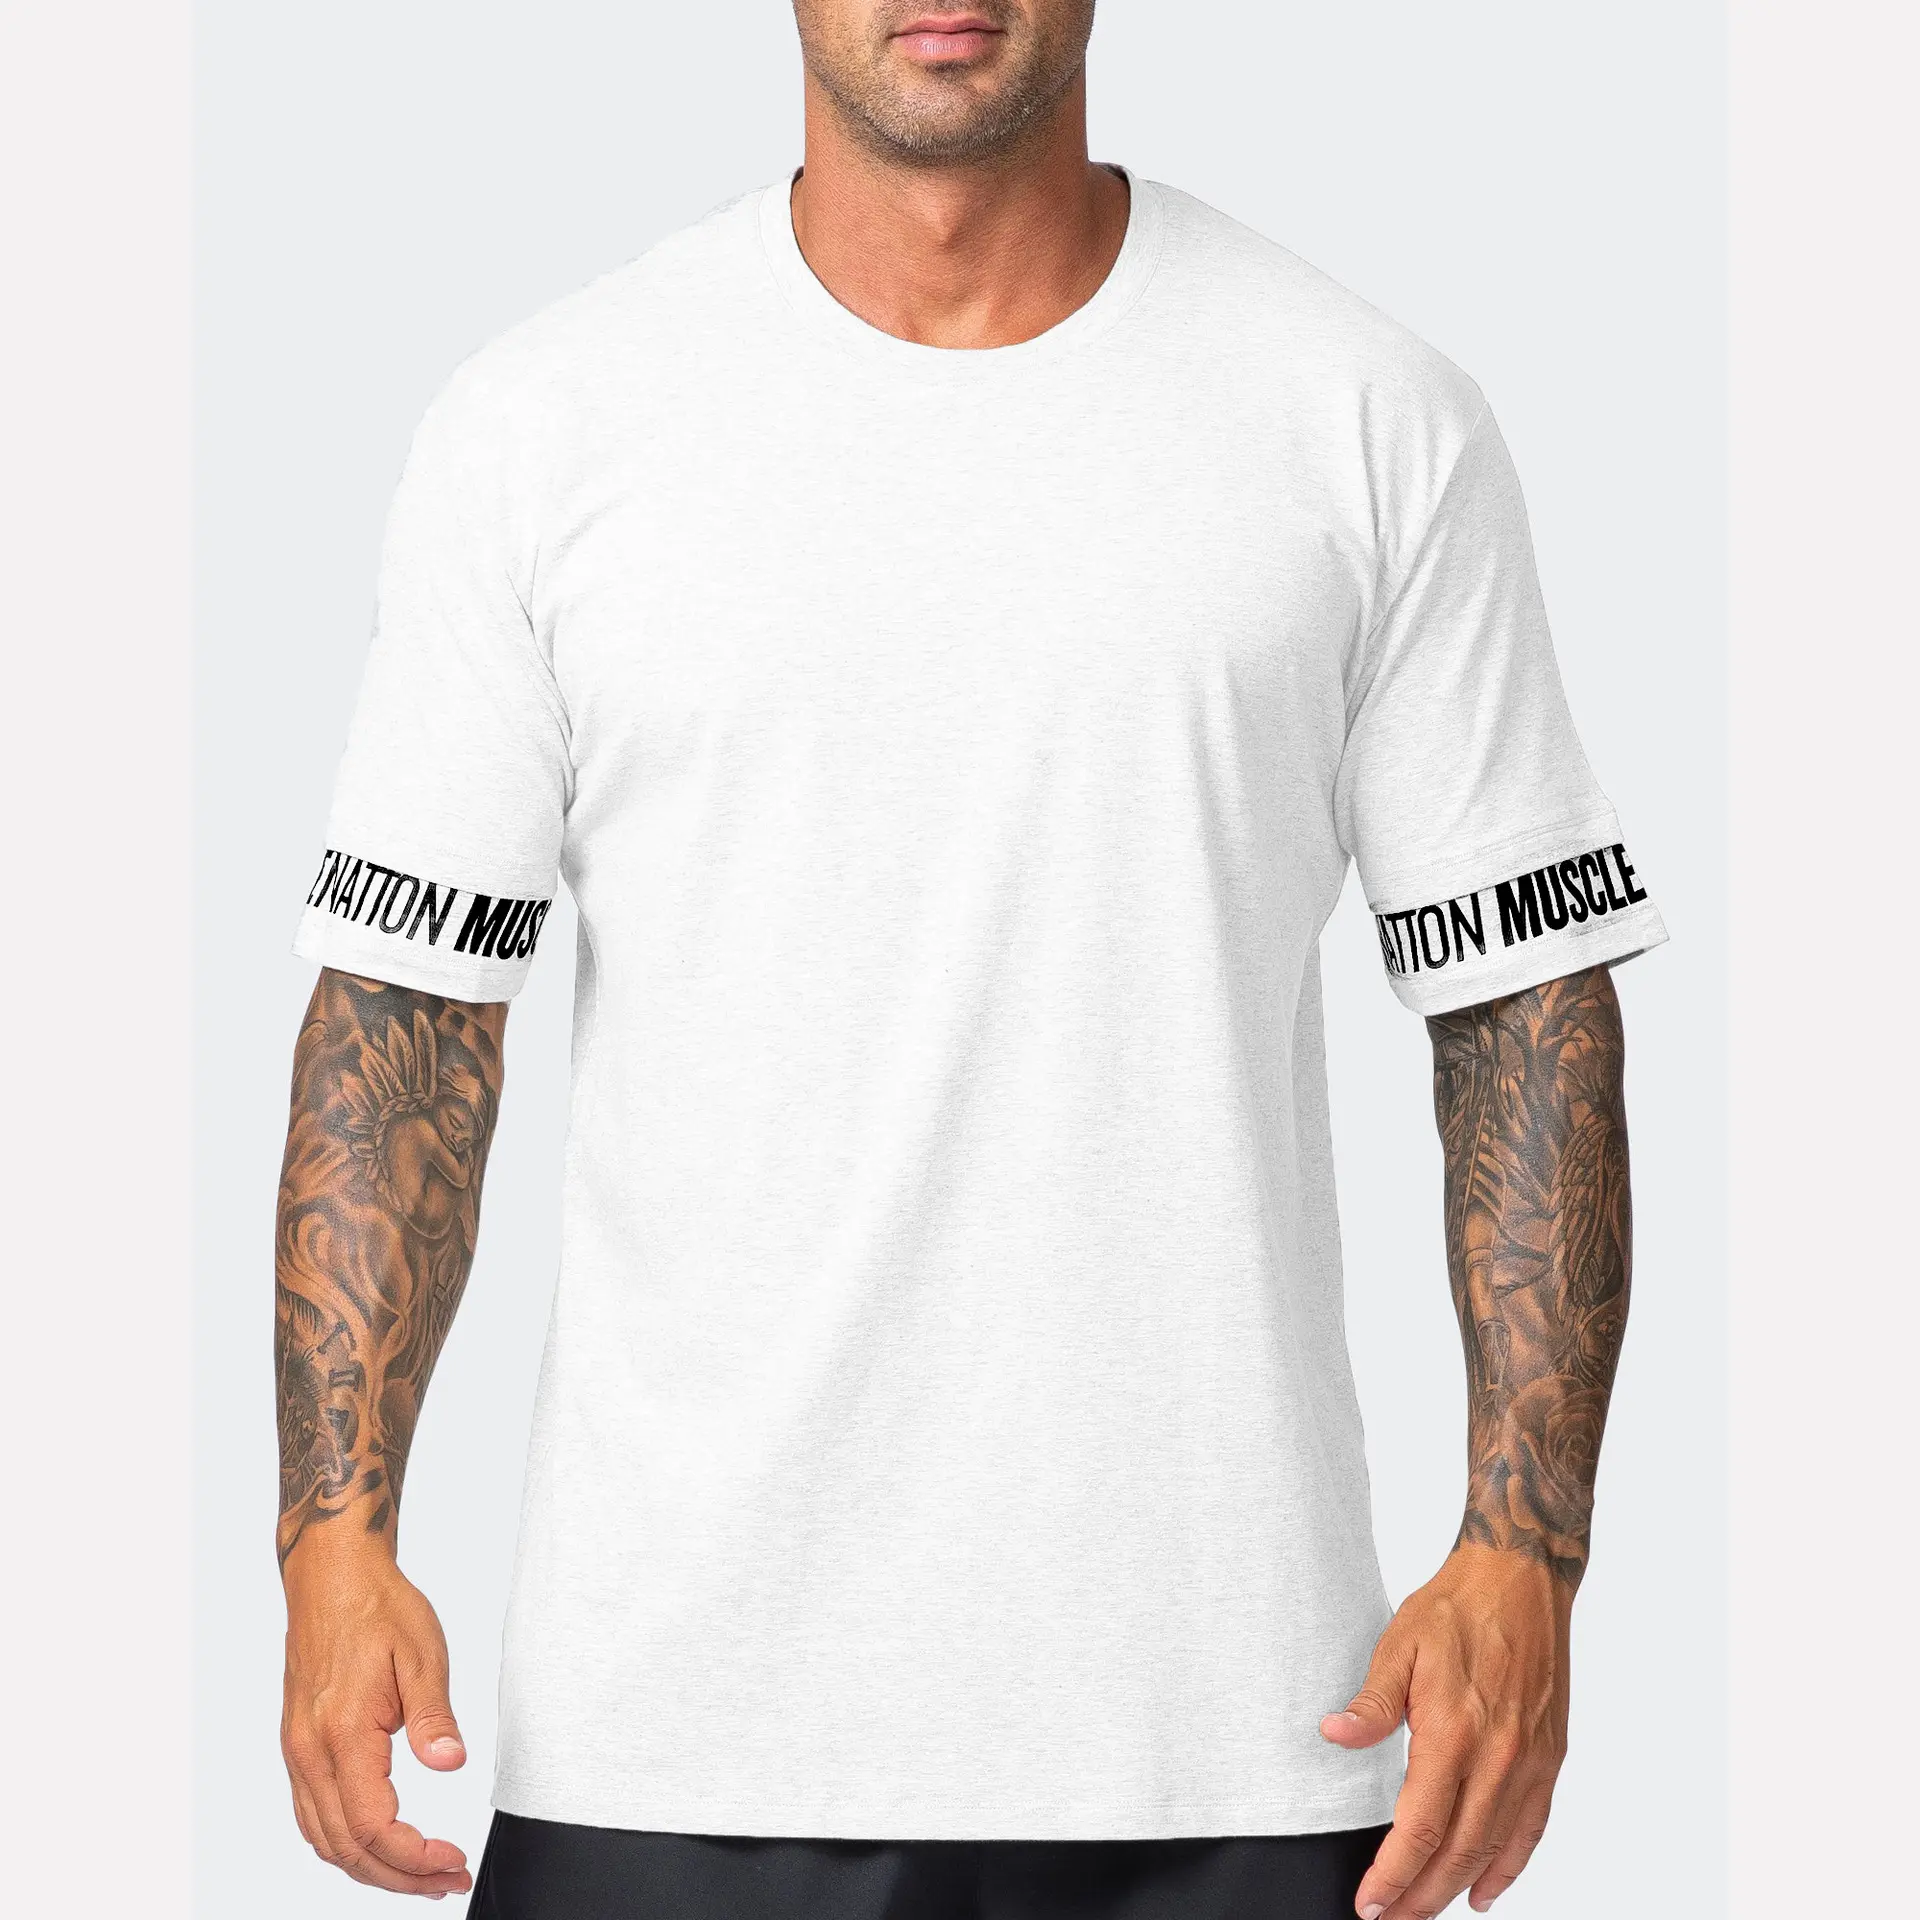 Camiseta masculina esportiva de corta e lazer para exercícios, camiseta grande de algodão elástica para homens